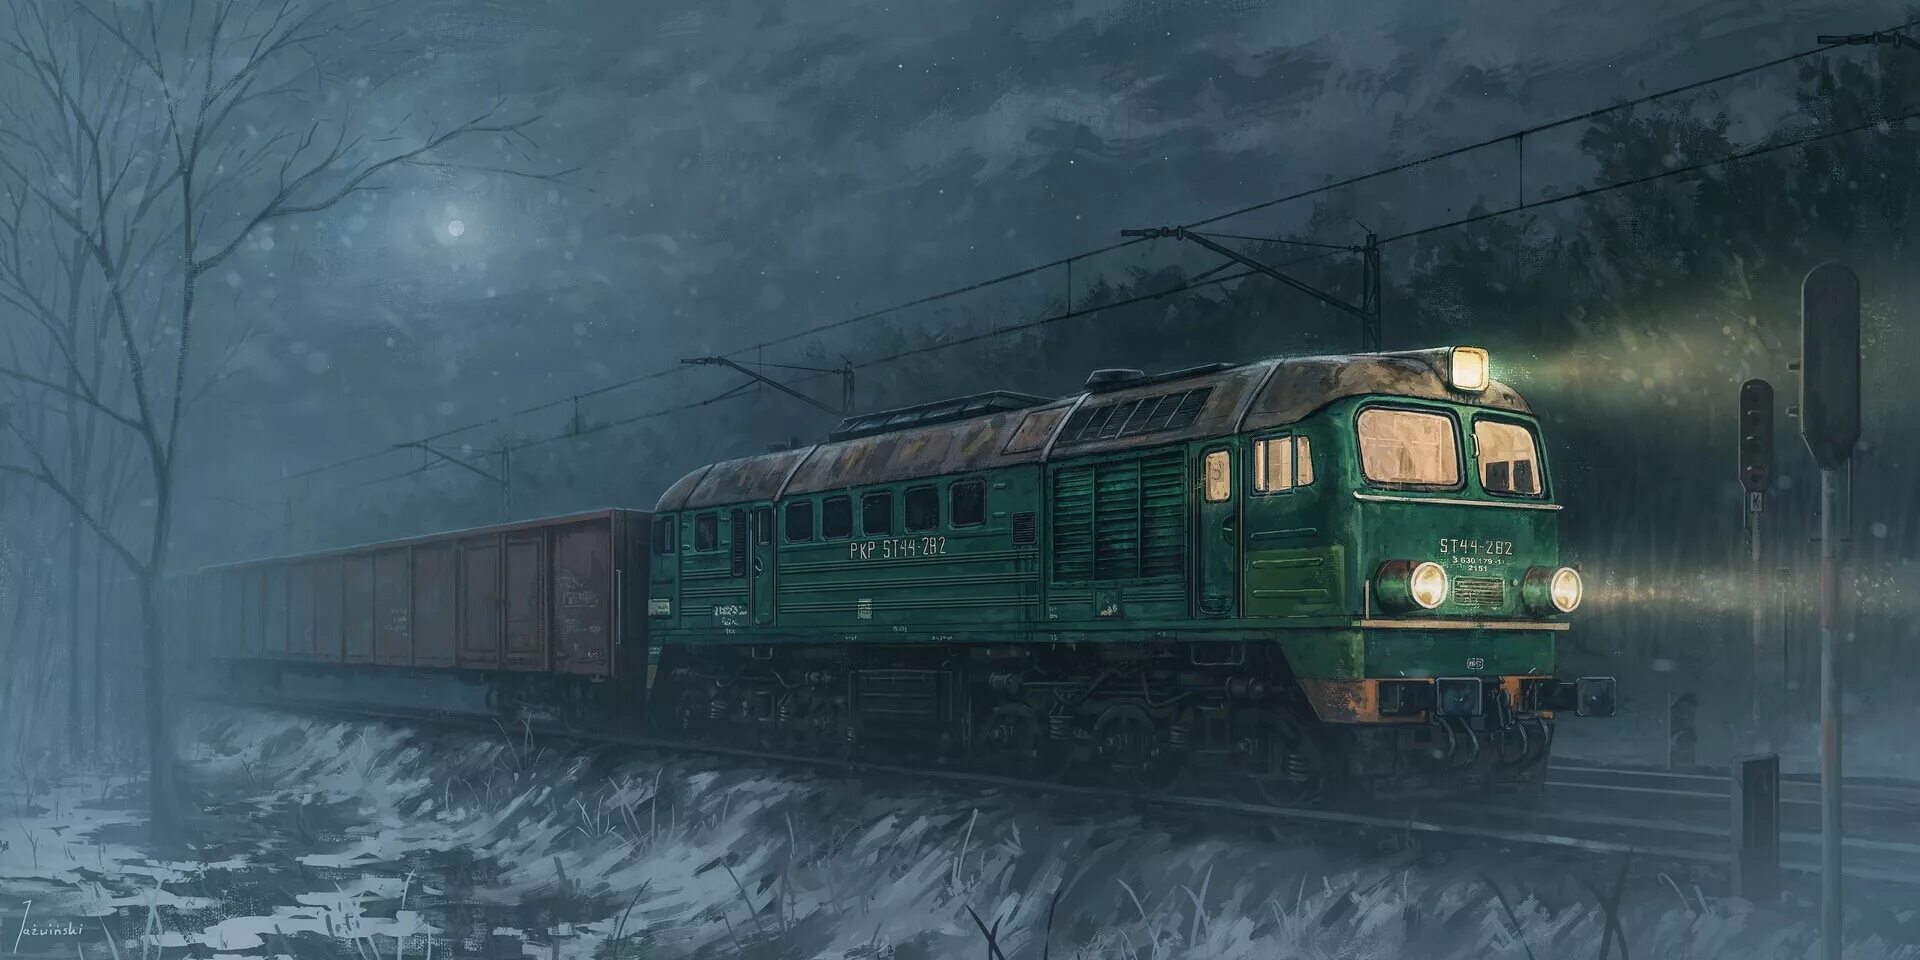 Поезд призрак СССР эр2 901. Поезда призраки вл80. Поезд арт.